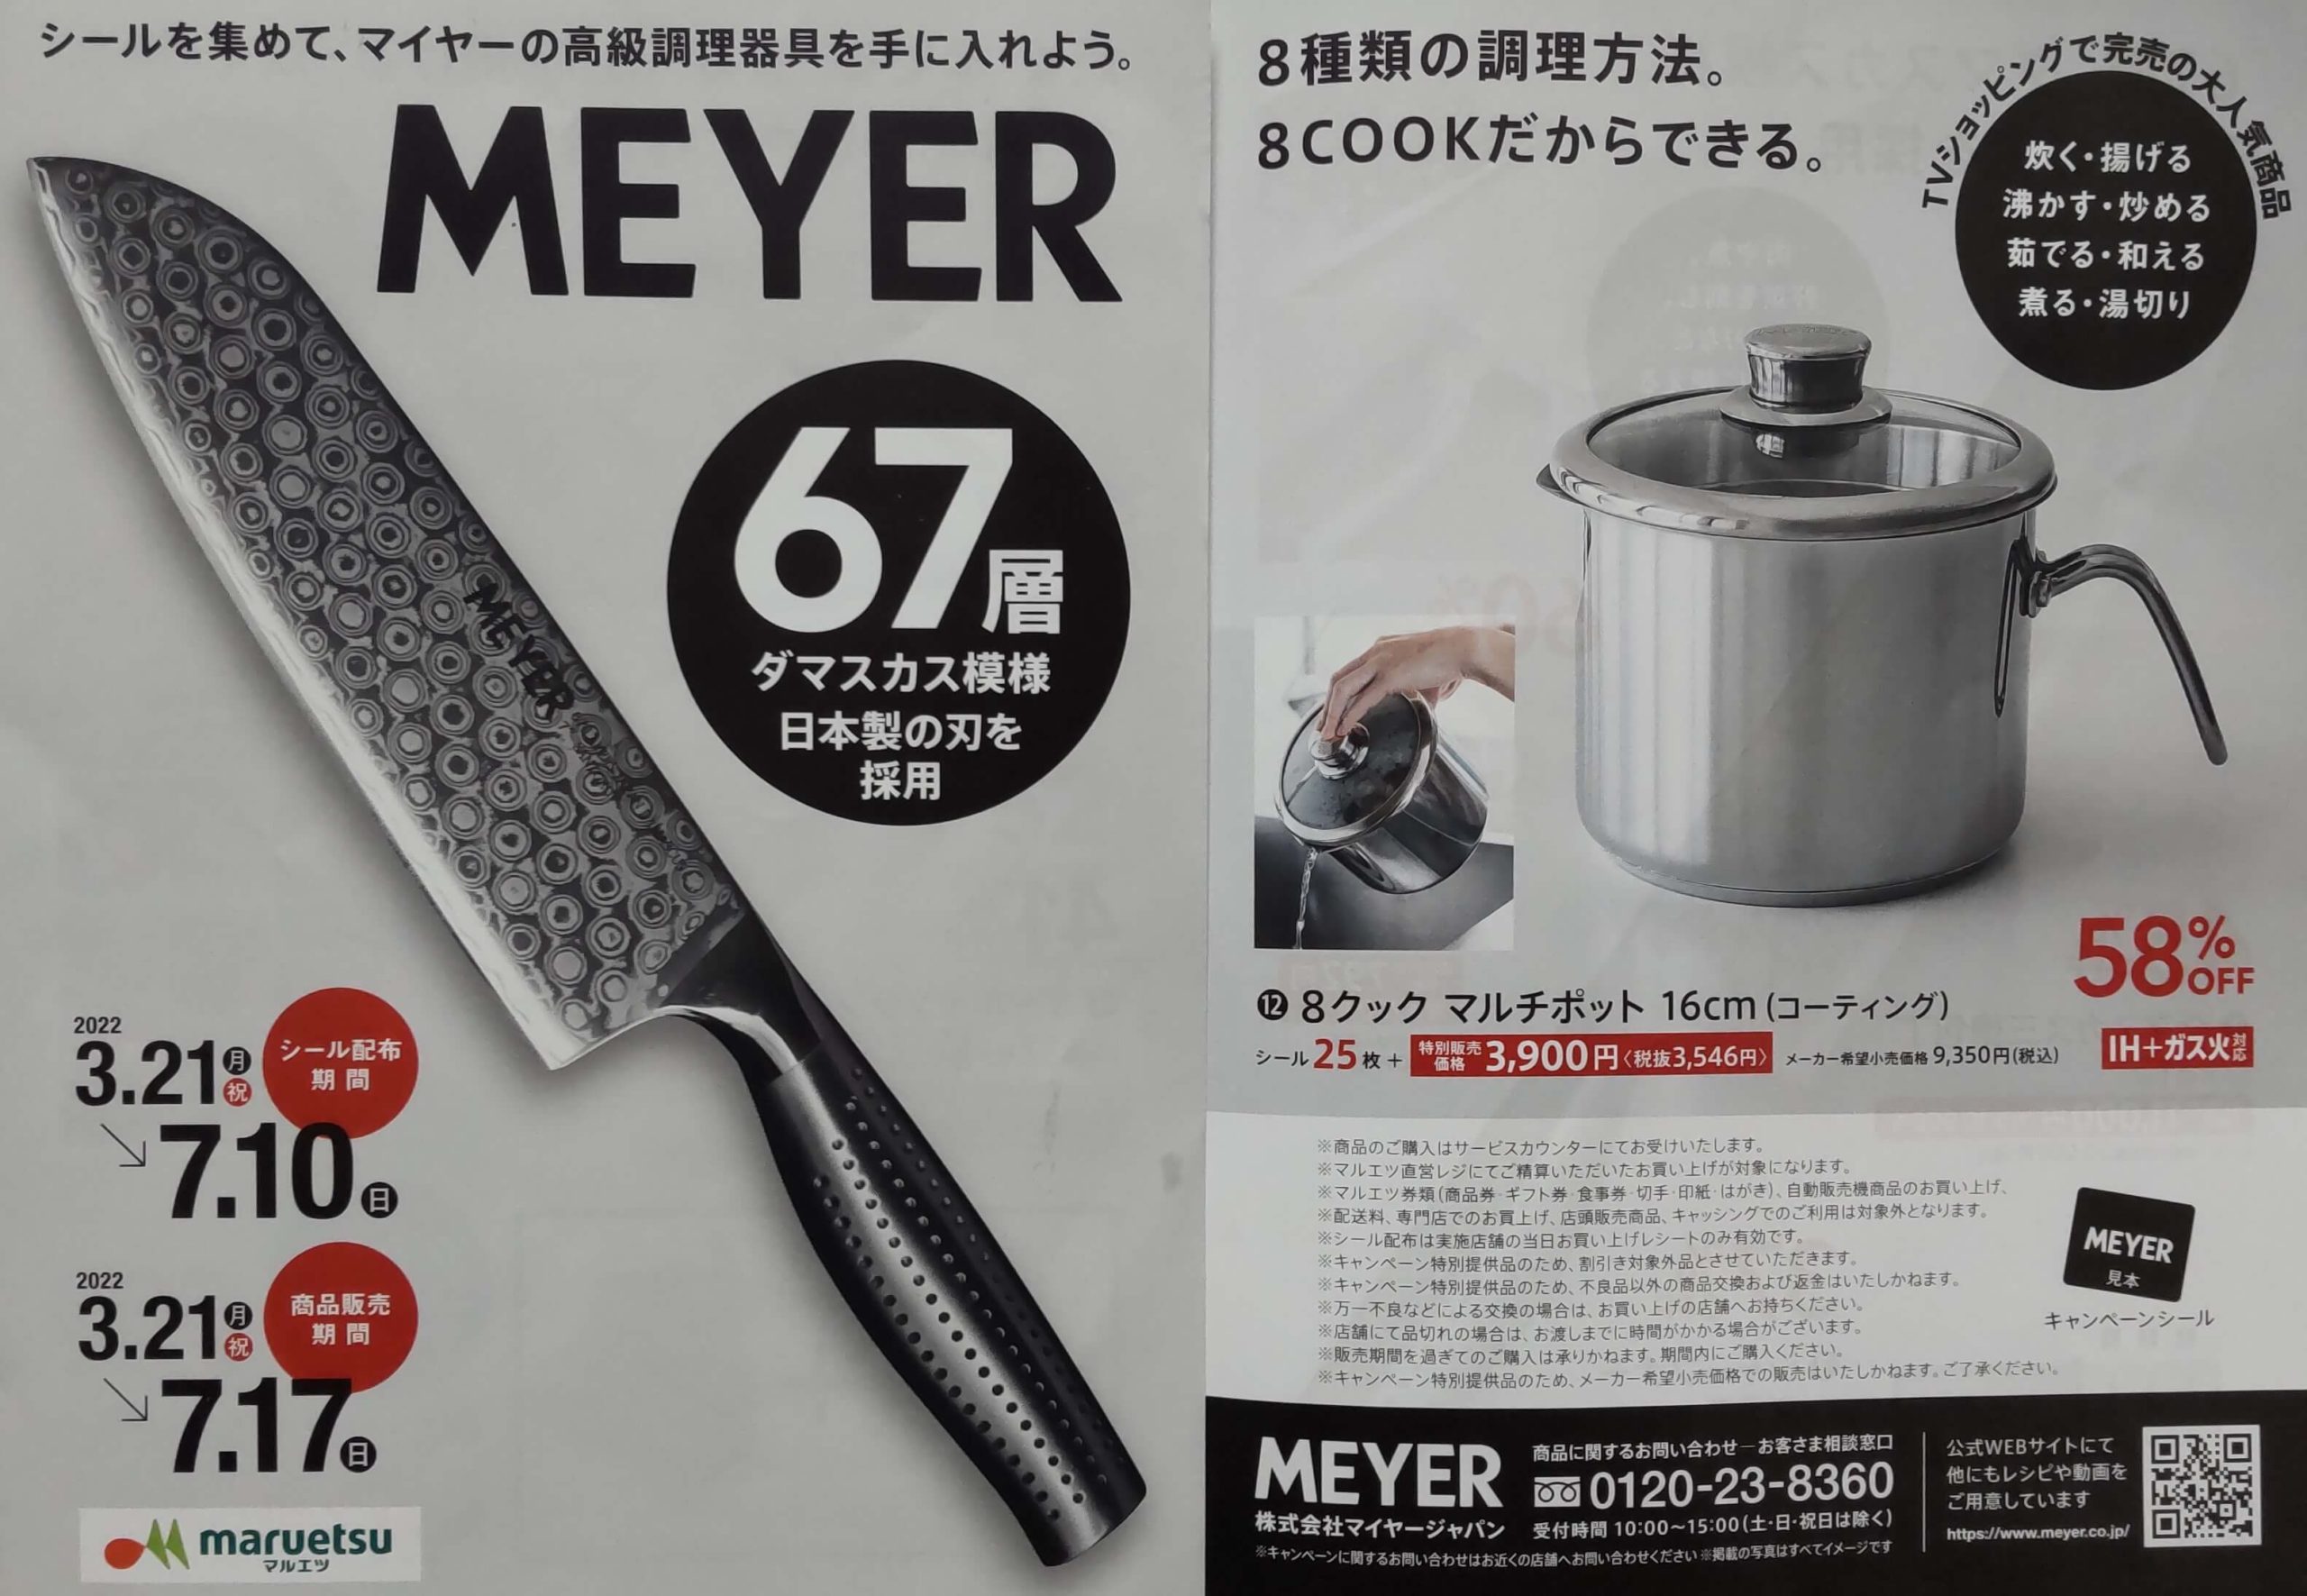 Meyer マイヤー を安く買いたい人必見 マルエツでおトクに手に入れる方法 れじぱんblog